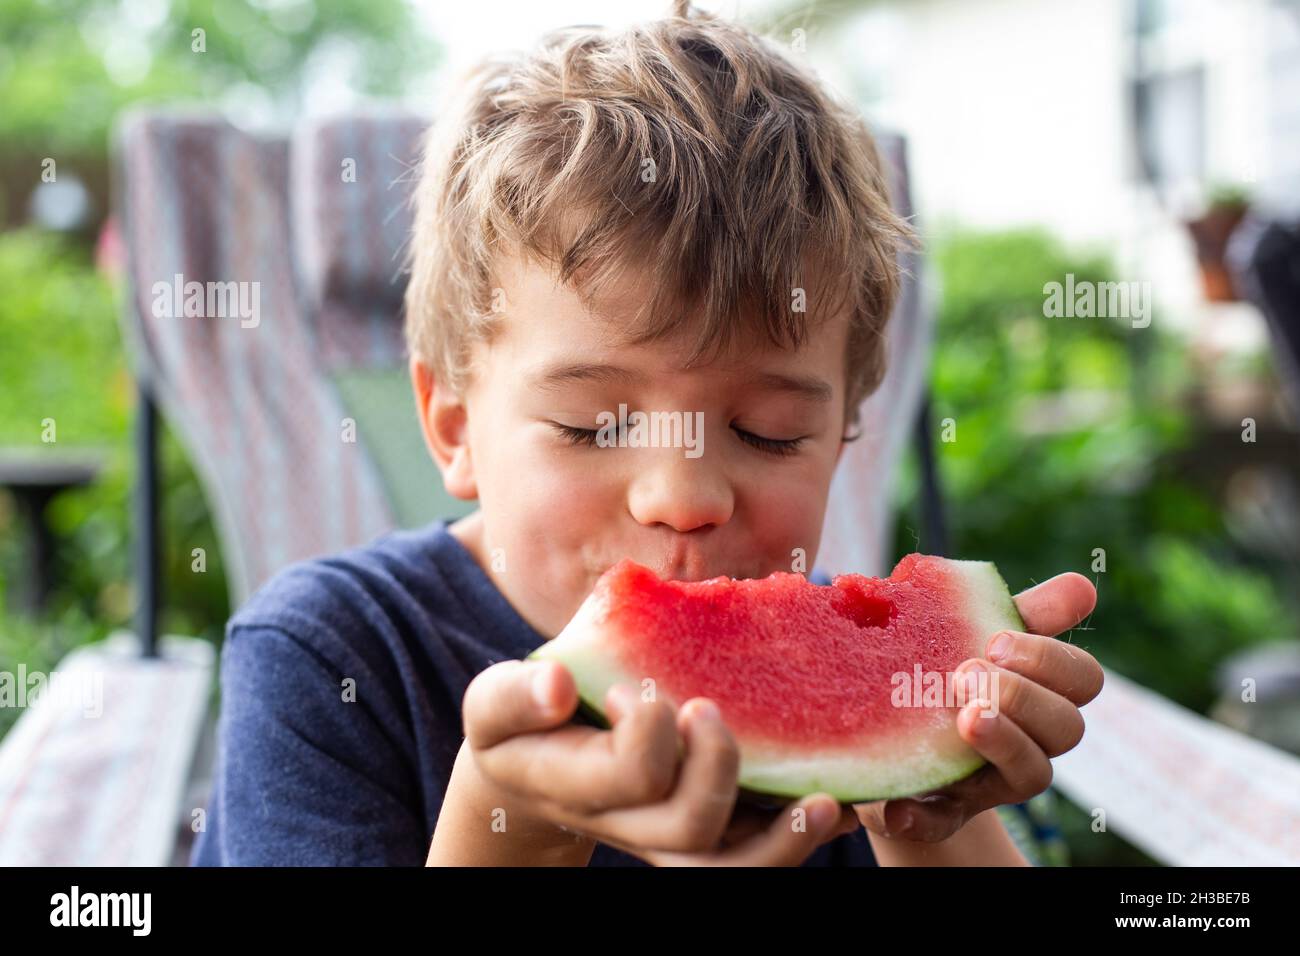 Petit garçon aux cheveux blonds mangeant de la pastèque avec les yeux fermés Banque D'Images